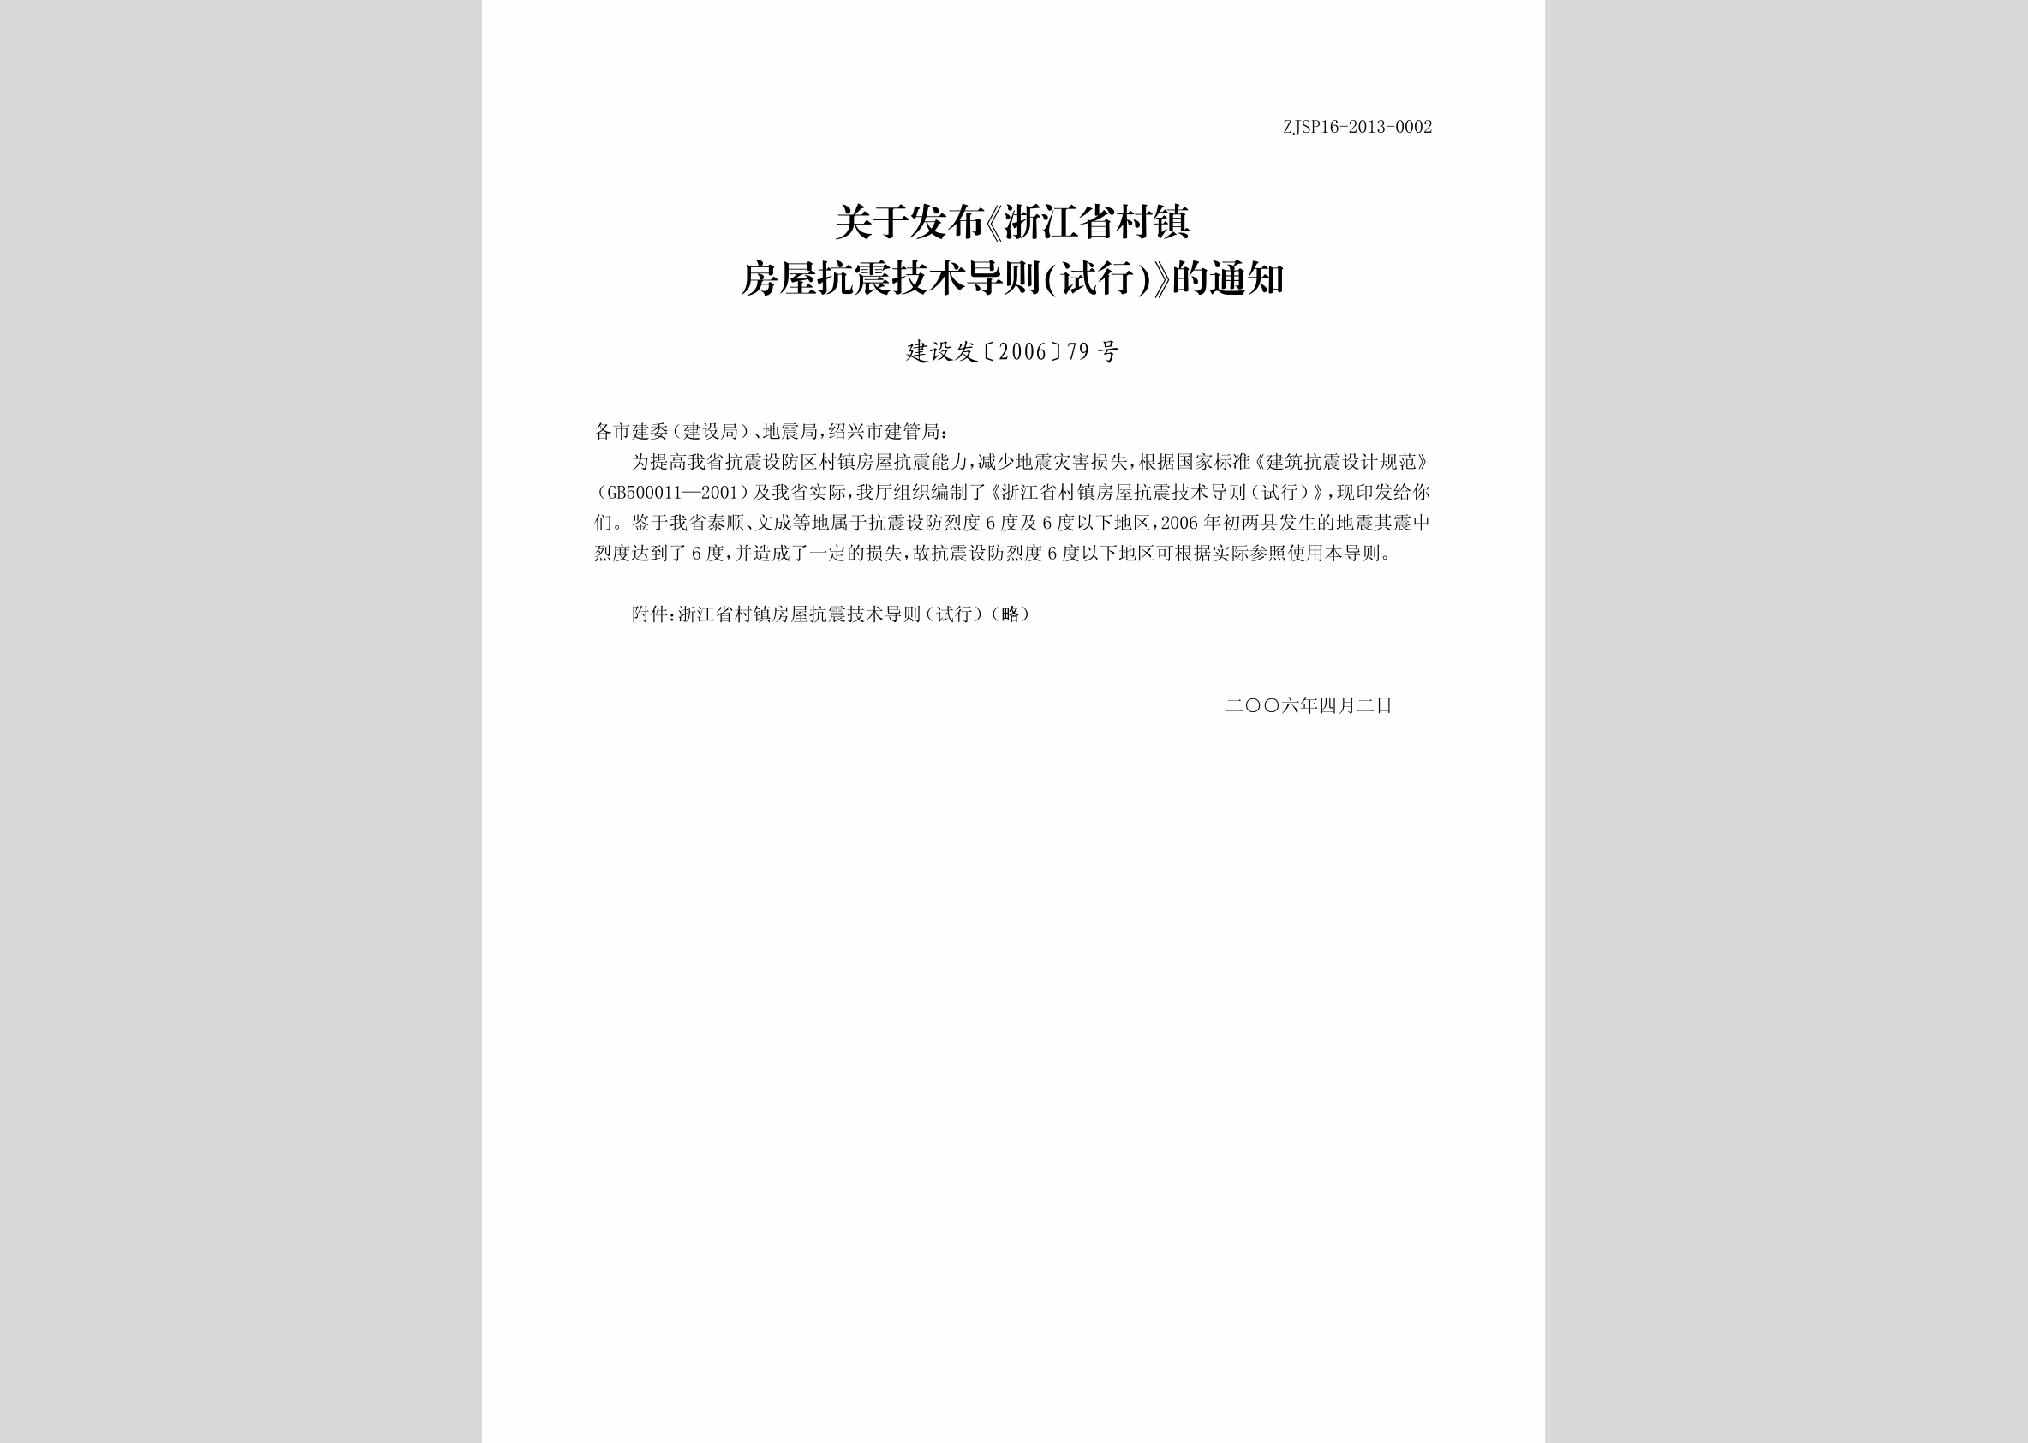 建设发[2006]79号：关于发布《浙江省村镇房屋抗震技术导则（试行）》的通知